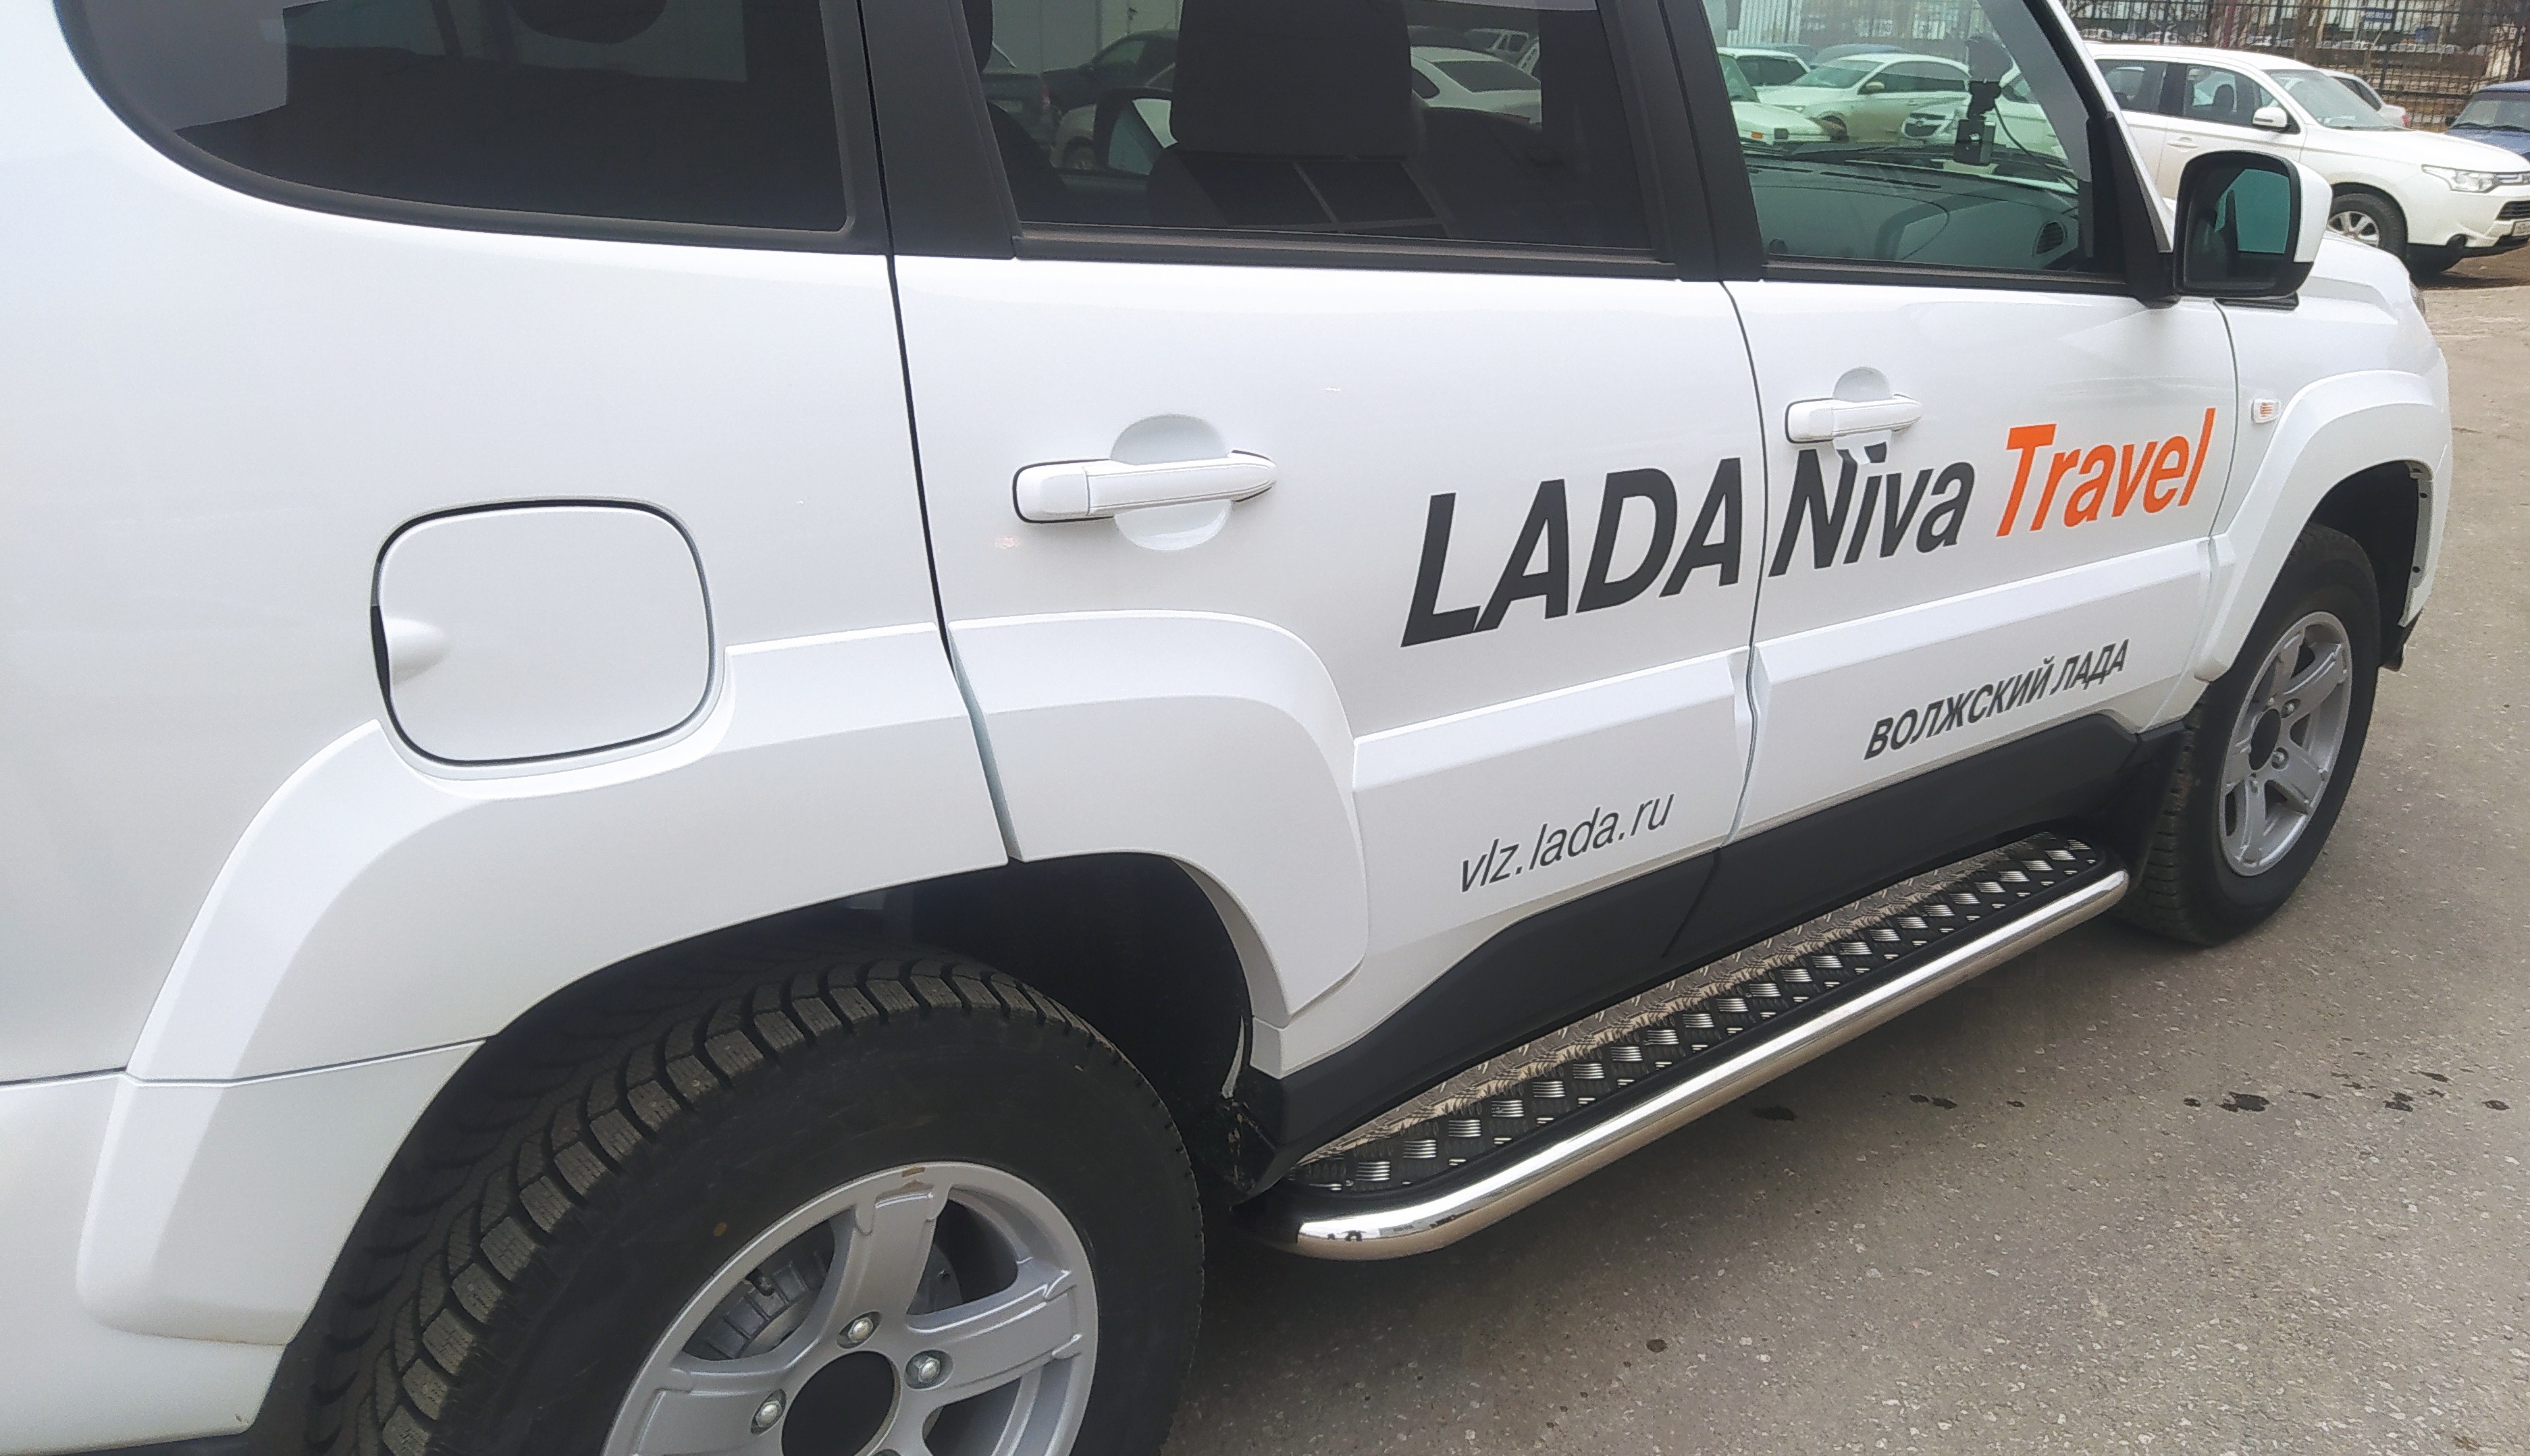 Пороги с накладным листом для автомобиля LADA (ВАЗ) Niva Travel 2021 арт. NVT.21.41